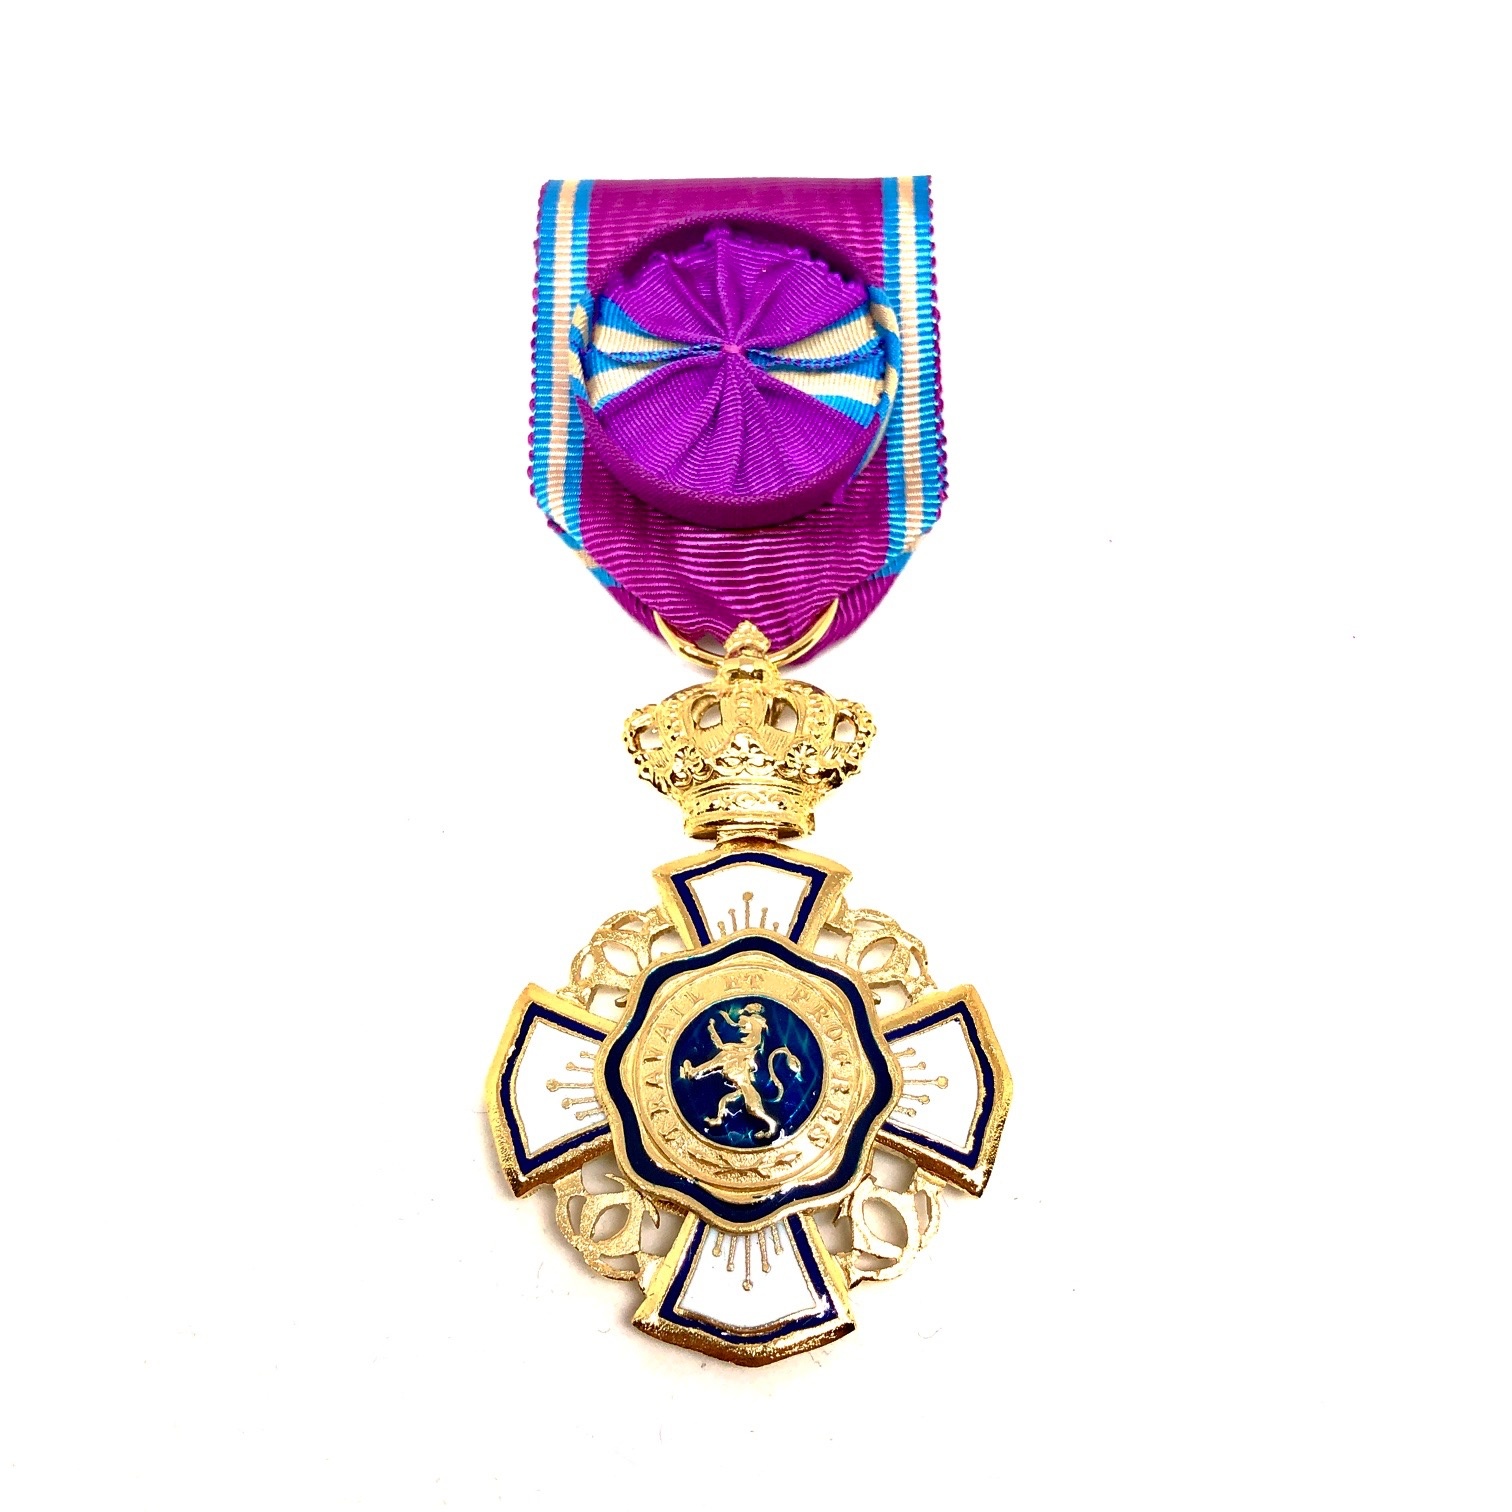 Officier in de Koninklijke Orde van de Leeuw